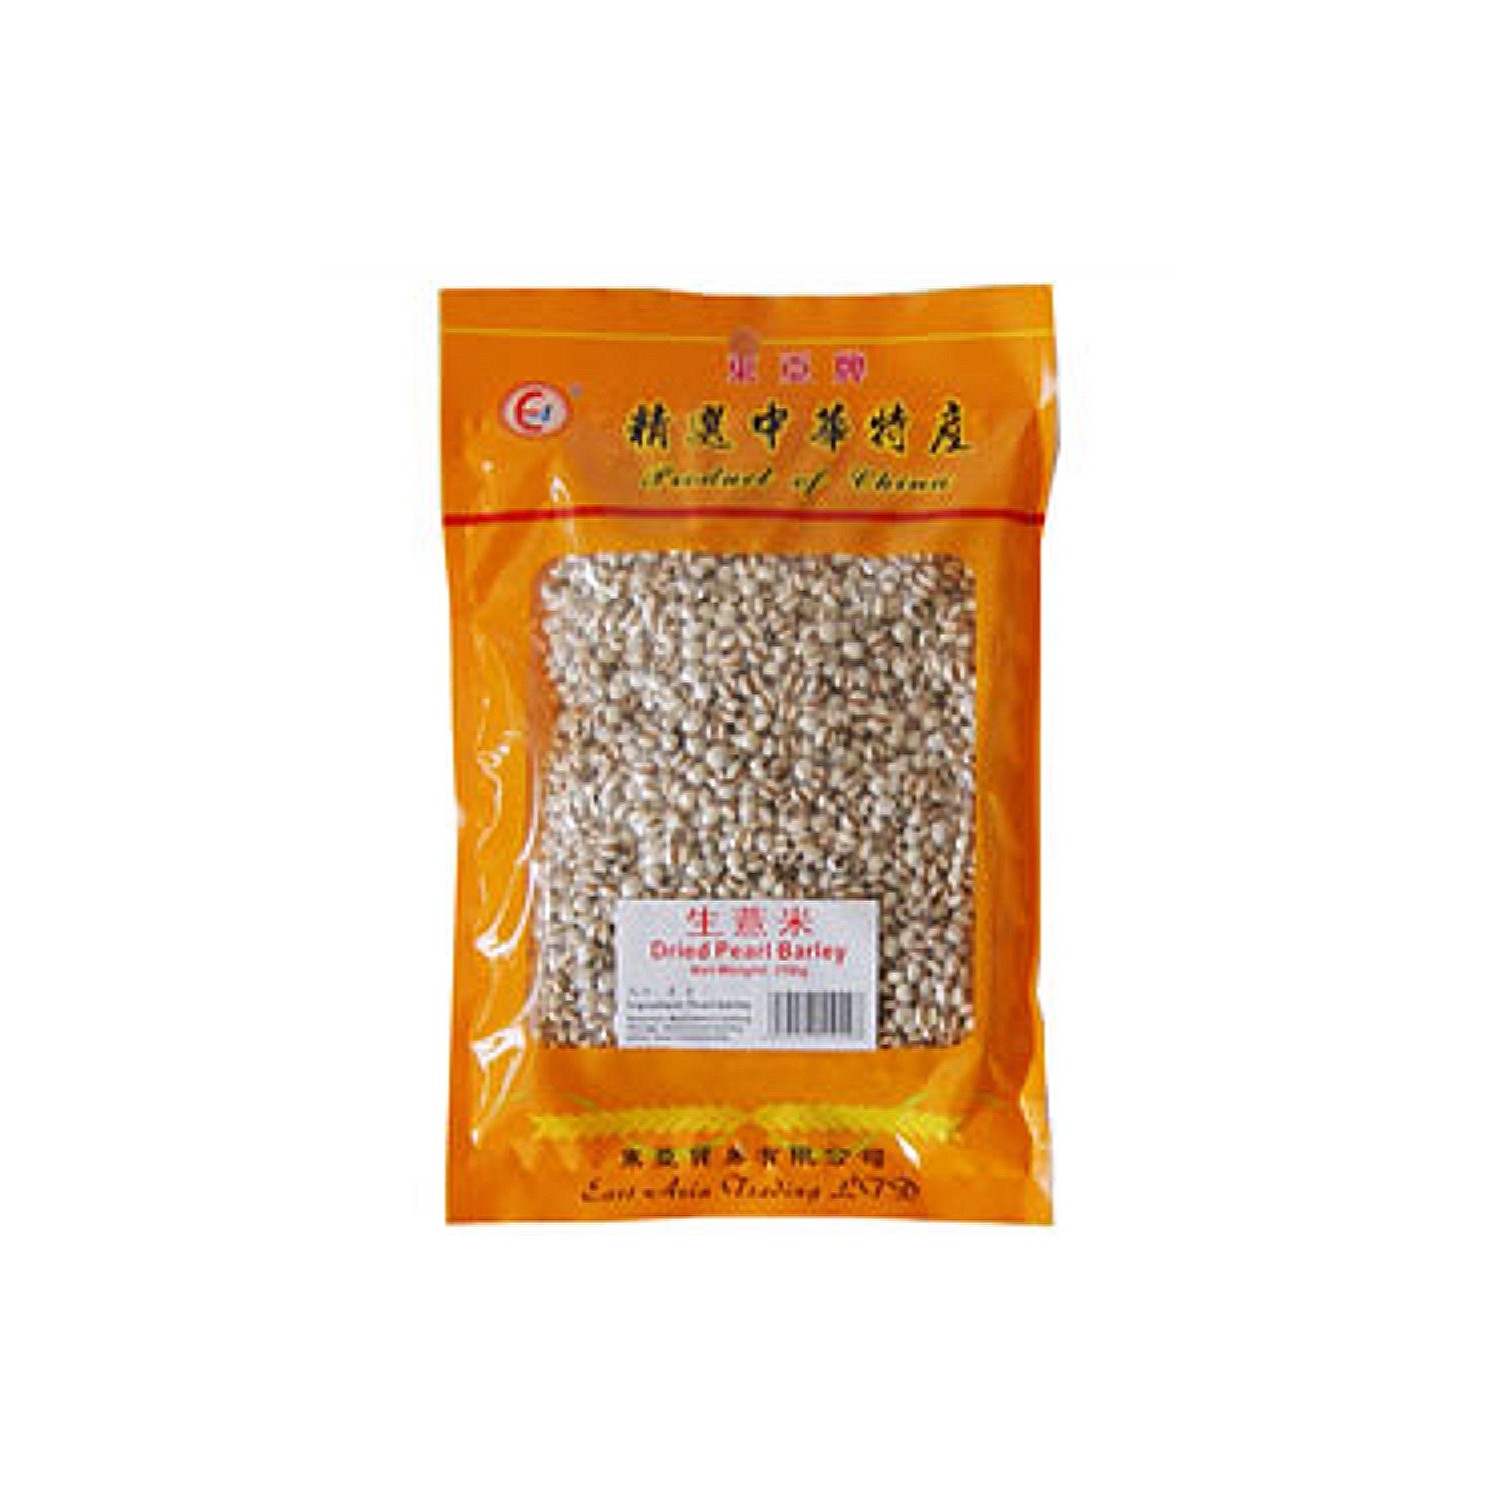 East Asia Brand - 250g - Dried Pearl Barley